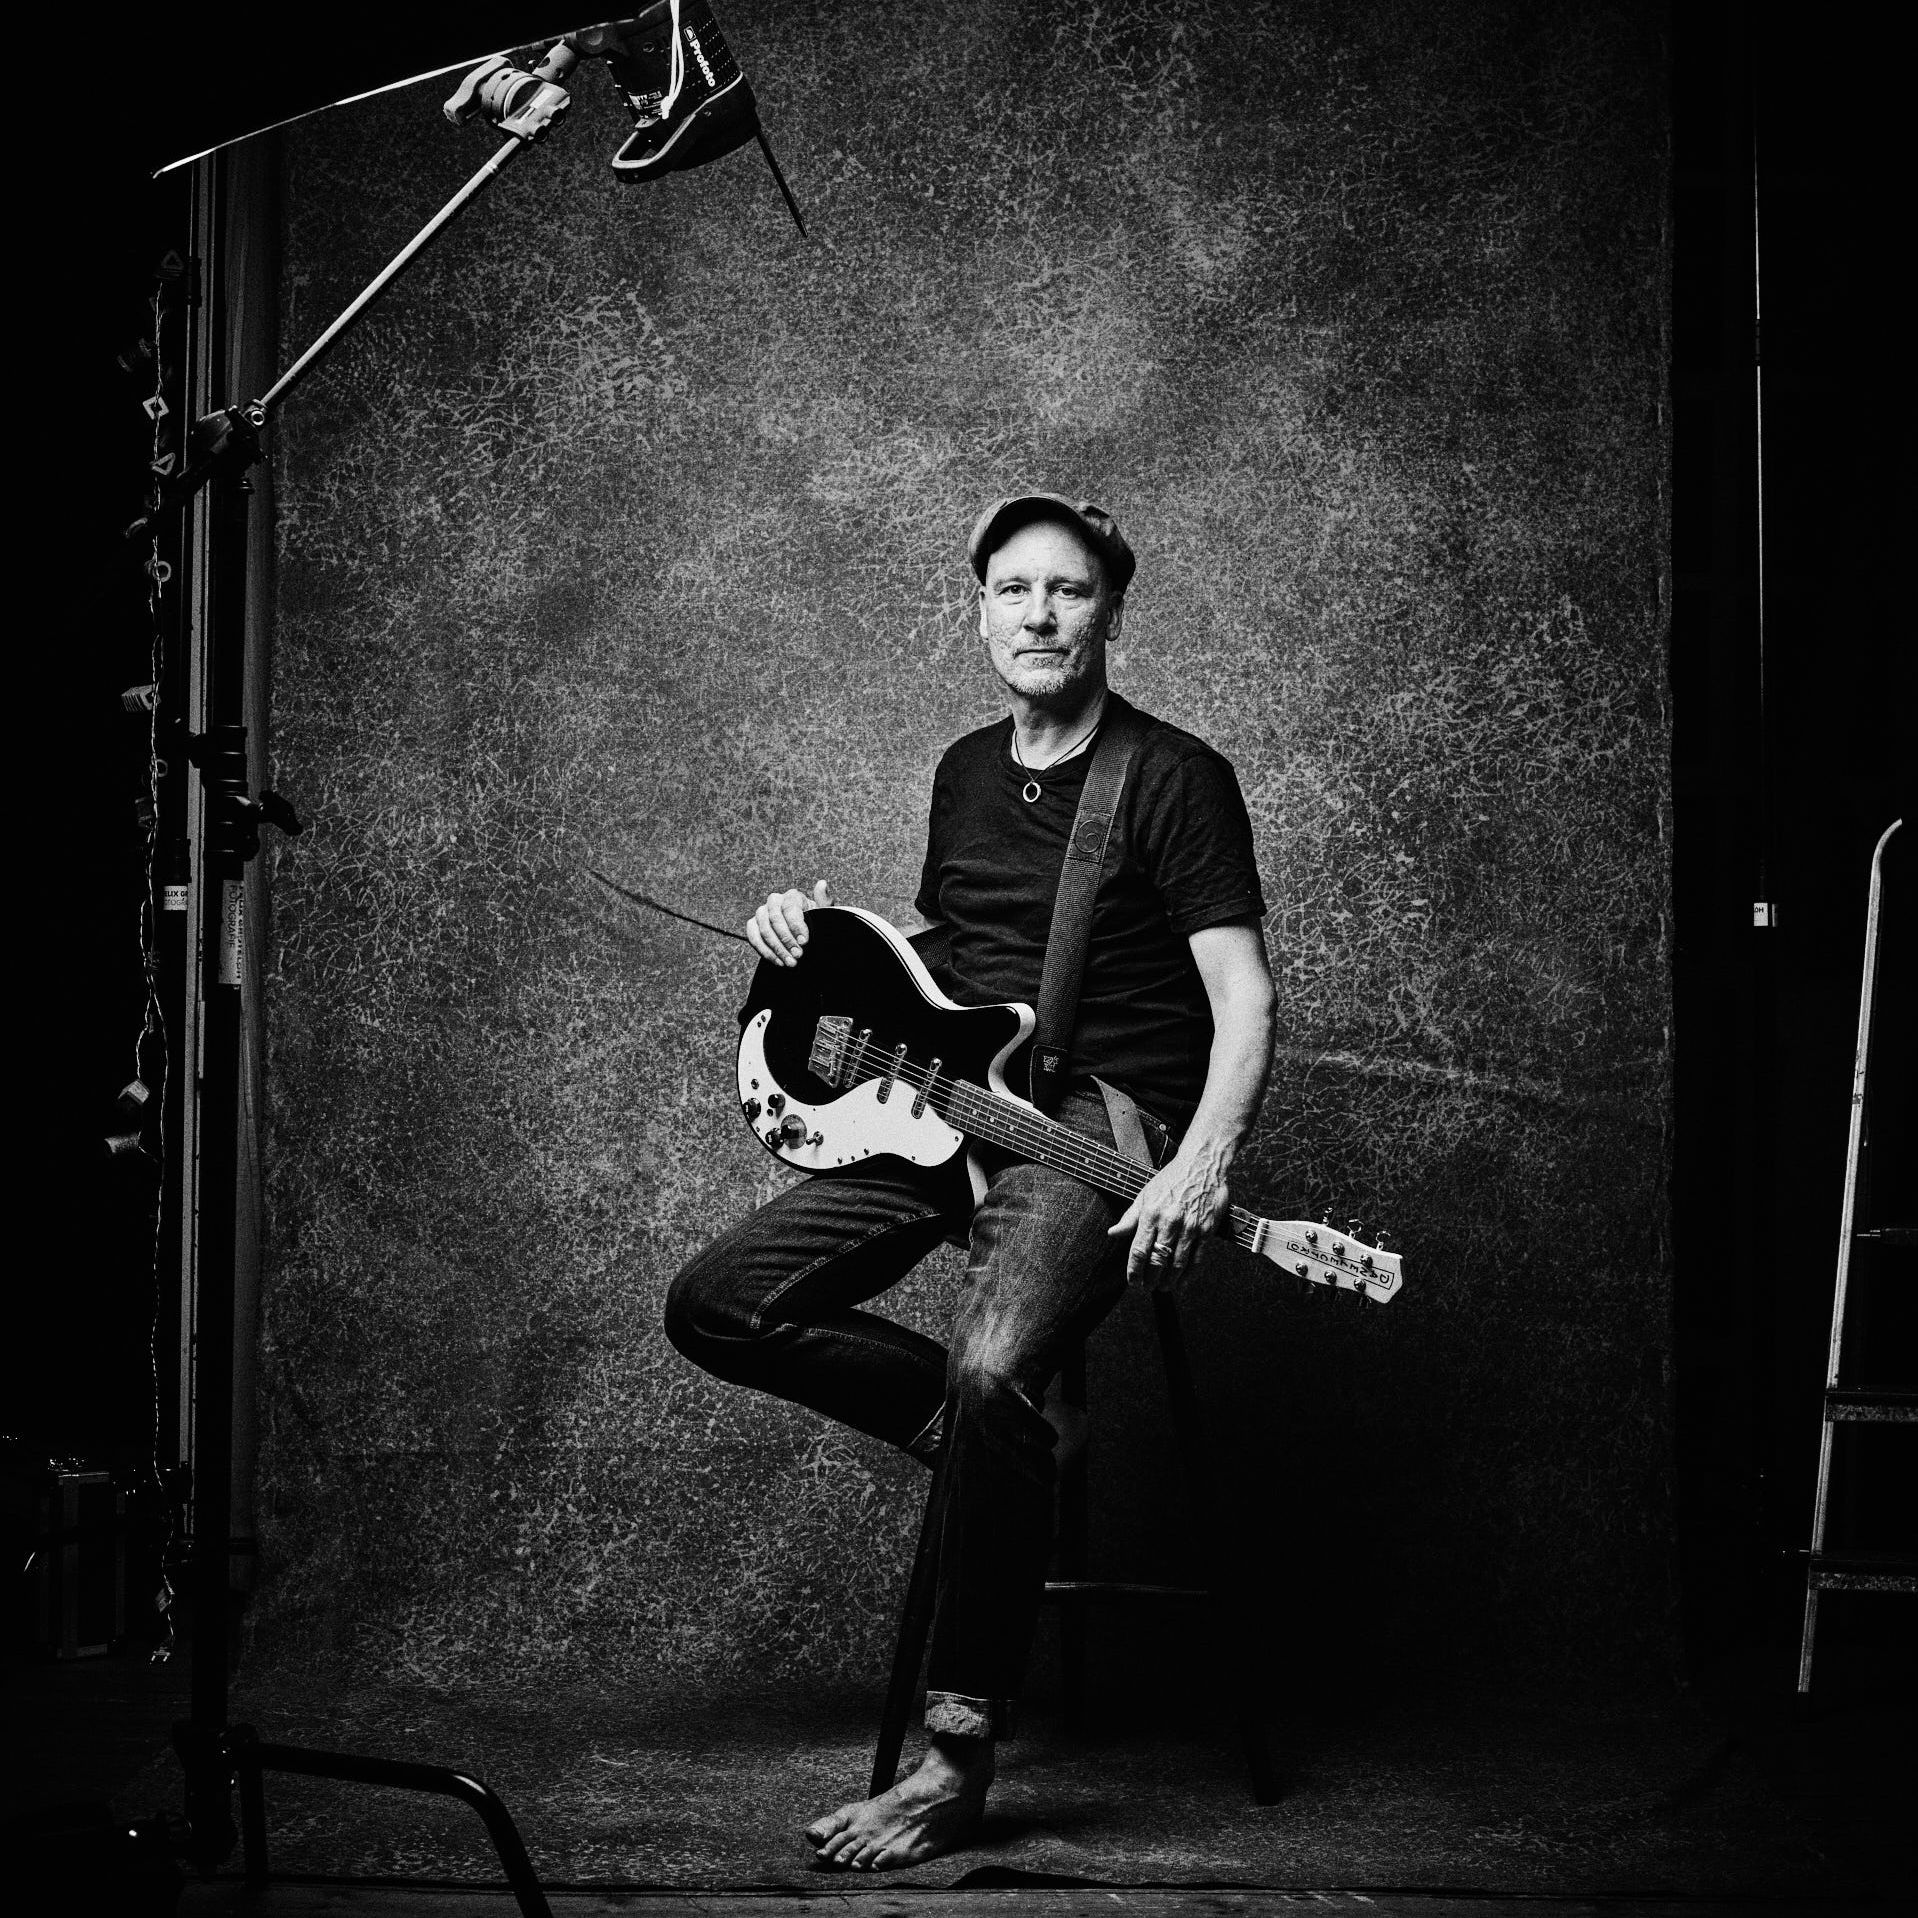 Schwarz-Weiß Aufnahme mit Sascha Bendiks in meinen Fotostudio. Er sitzt auf einen handgemachten Barhocker, eine Schwarze Gitarre auf dem Schoss. Blick in die Kamera. Der Blitz und das Stativ sind mit auf dem Bild.